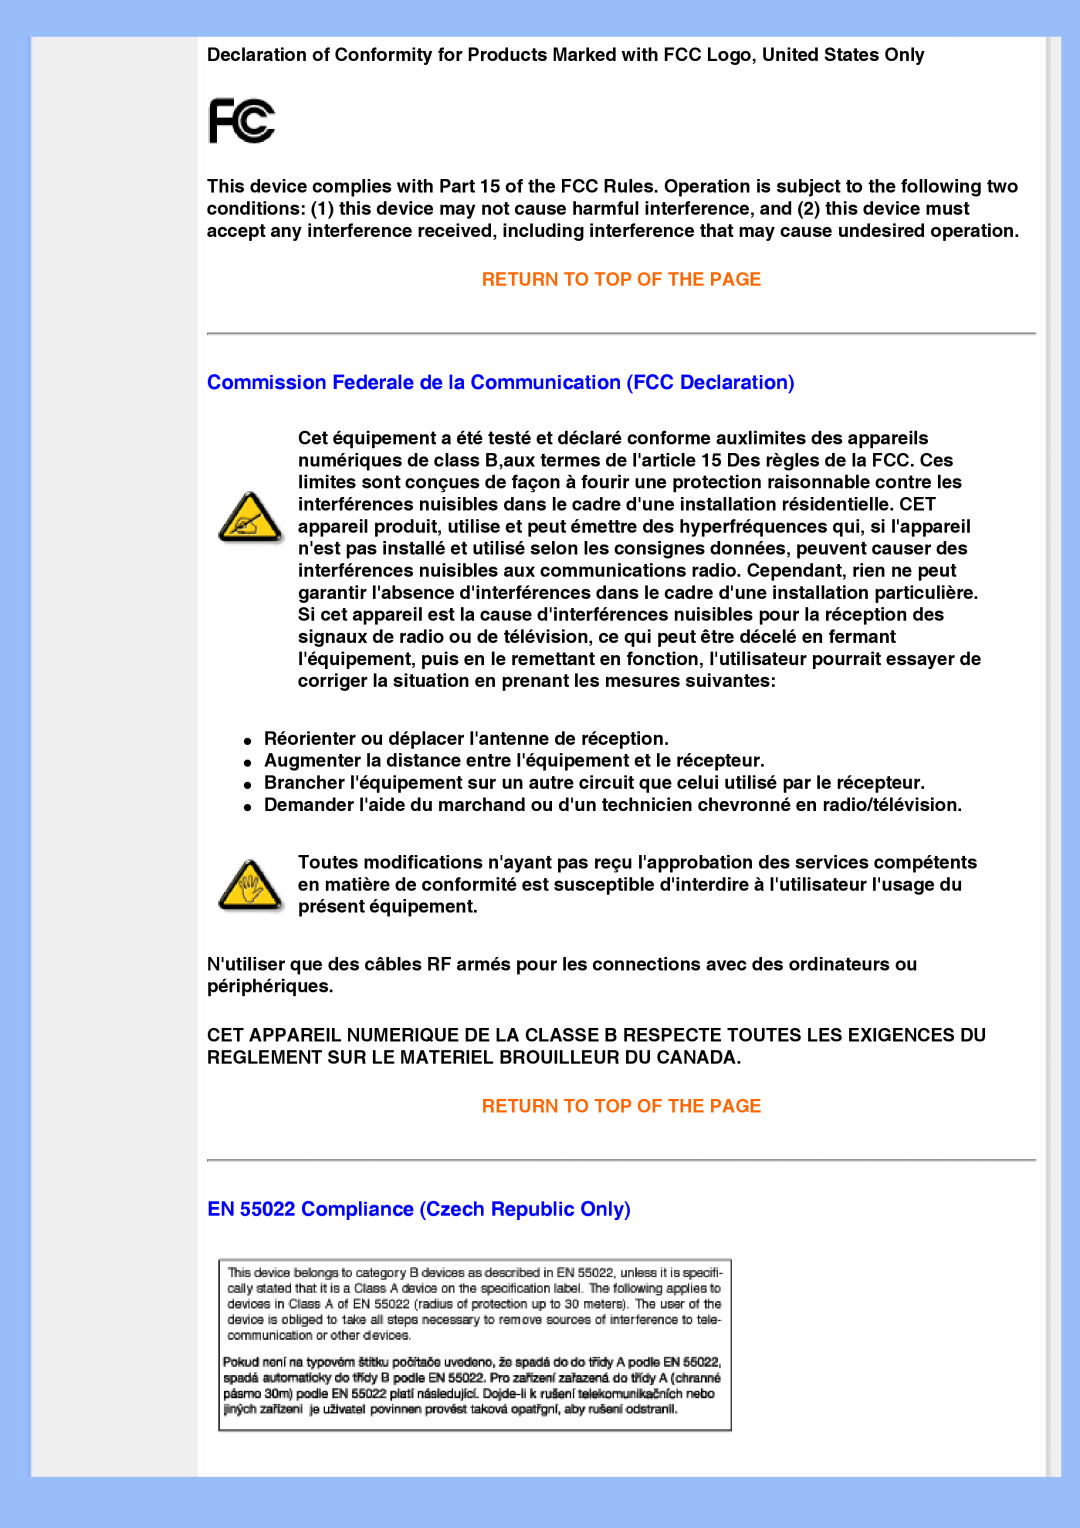 Philips 200BW8 user manual Commission Federale de la Communication FCC Declaration, EN 55022 Compliance Czech Republic Only 